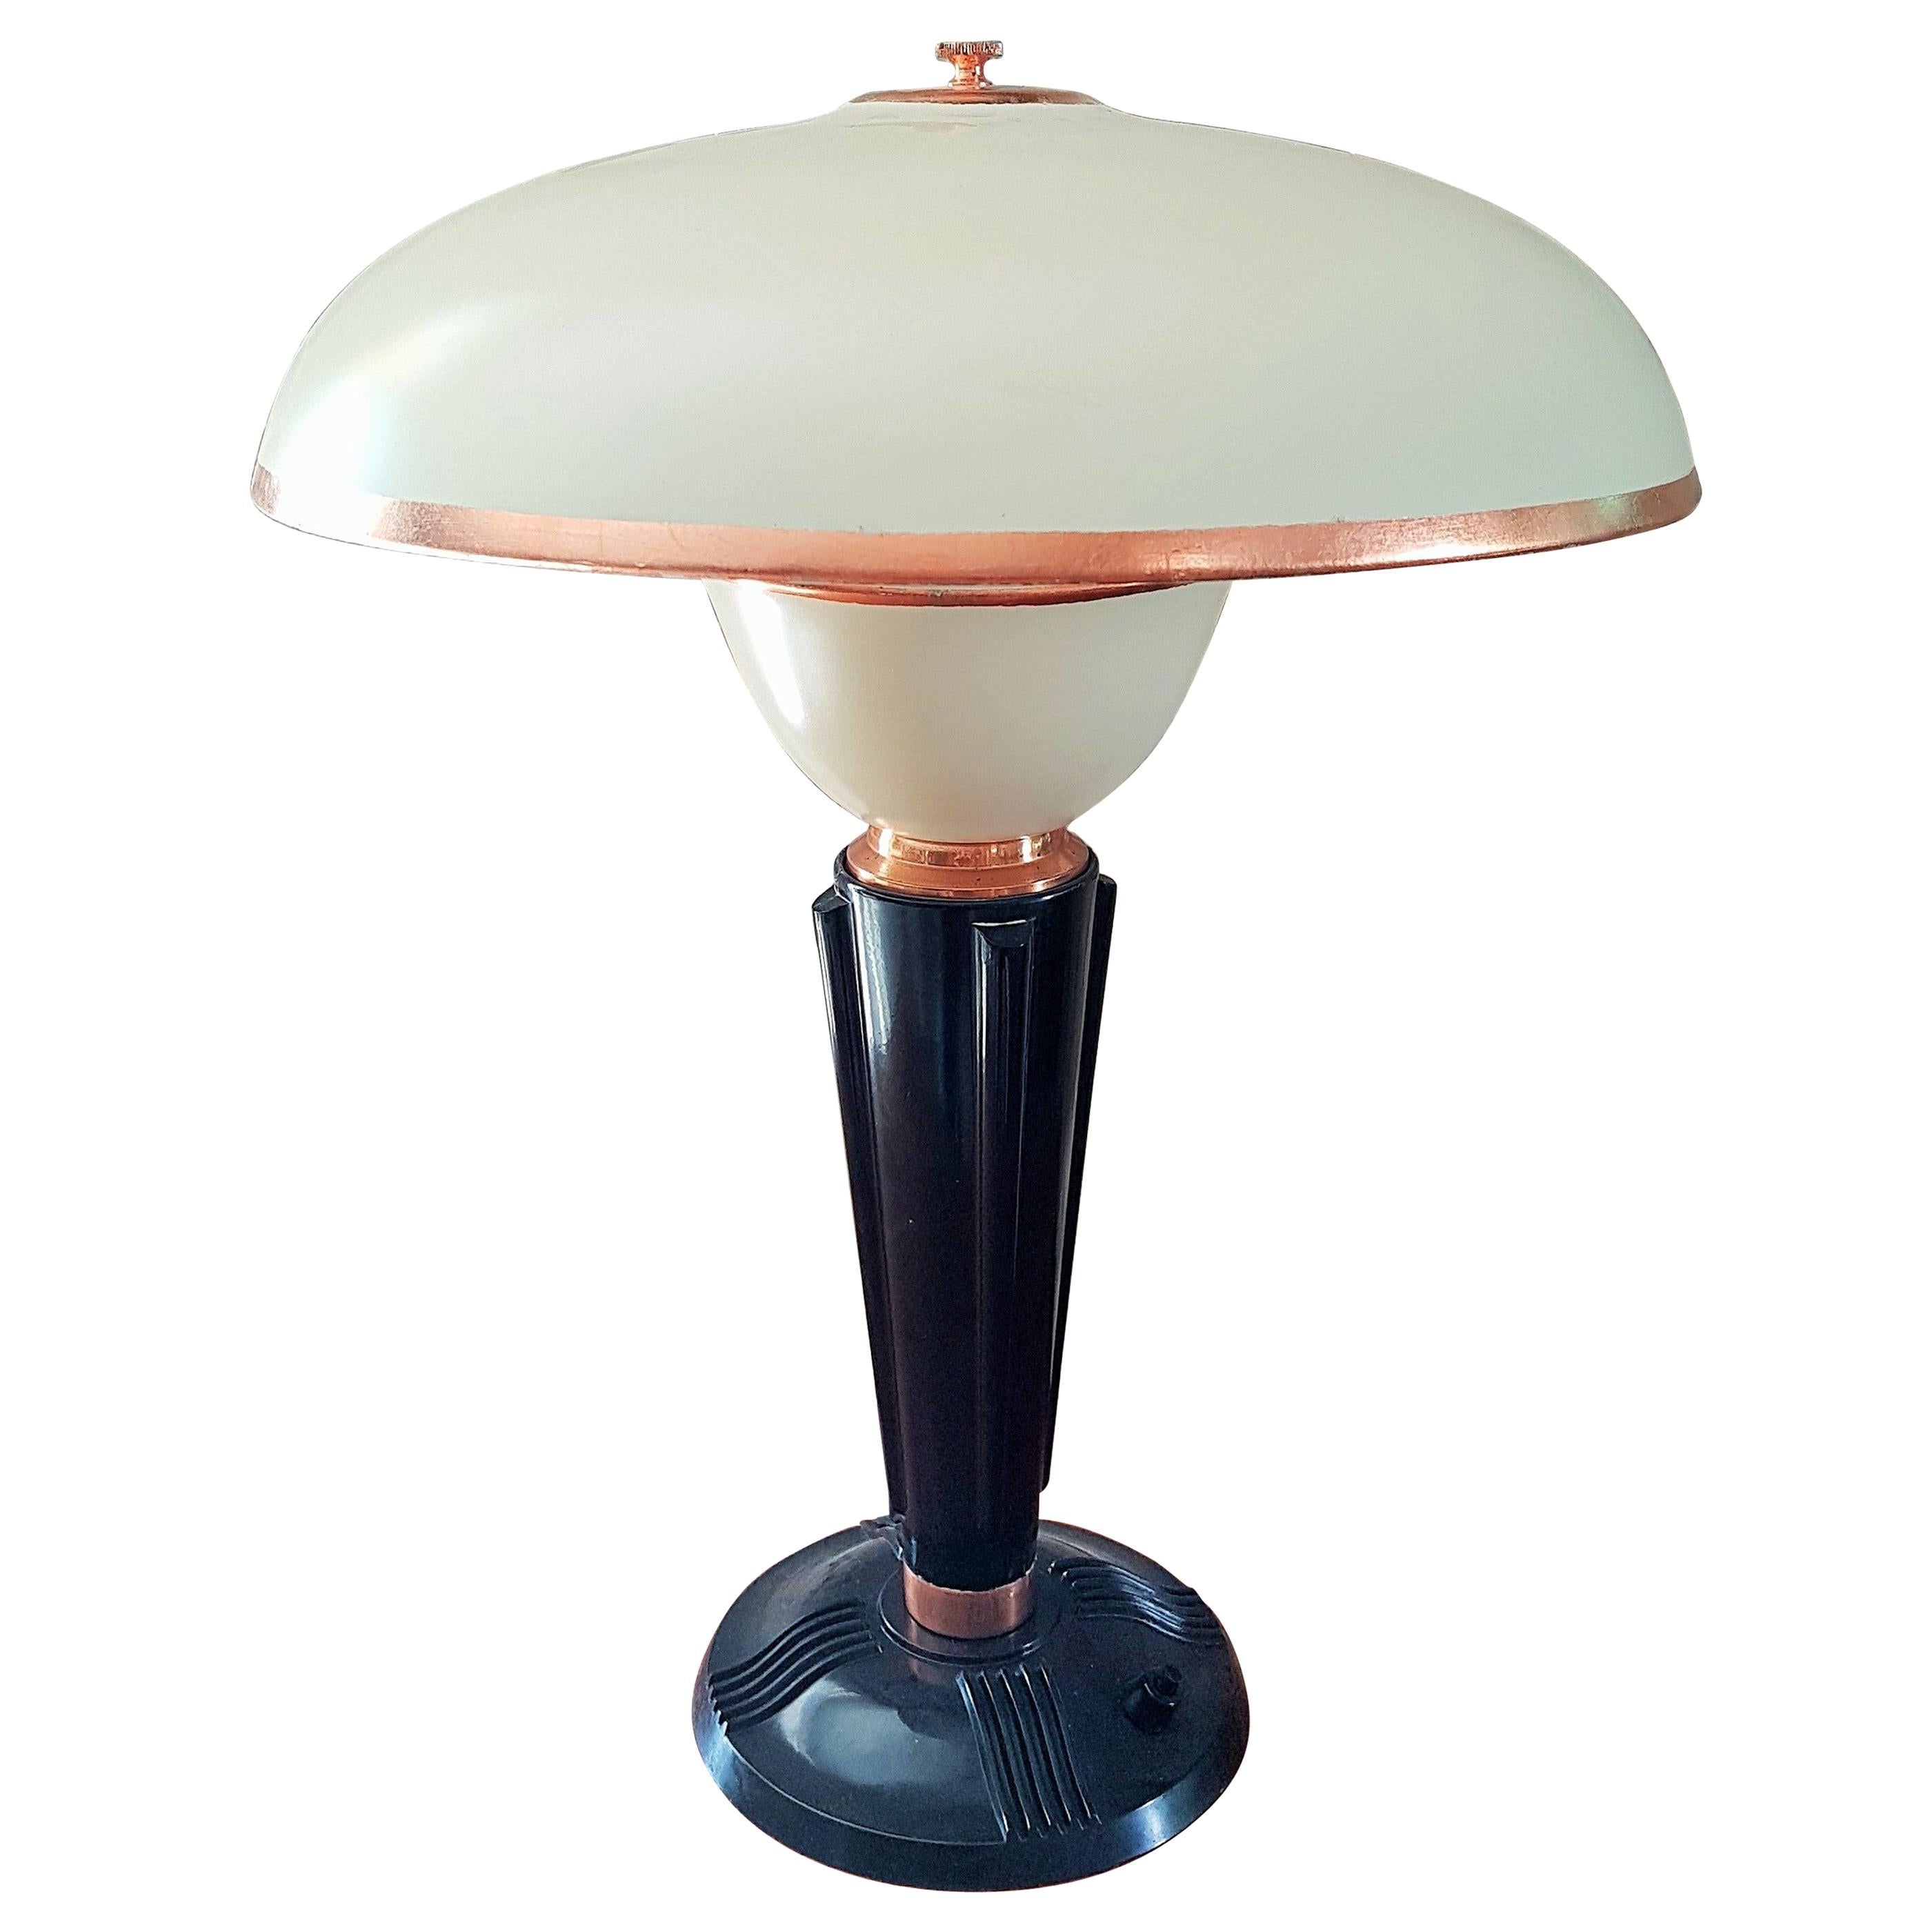 Eileen Gray for Jumo French Art Deco Bakelite Desk/Table Lamp